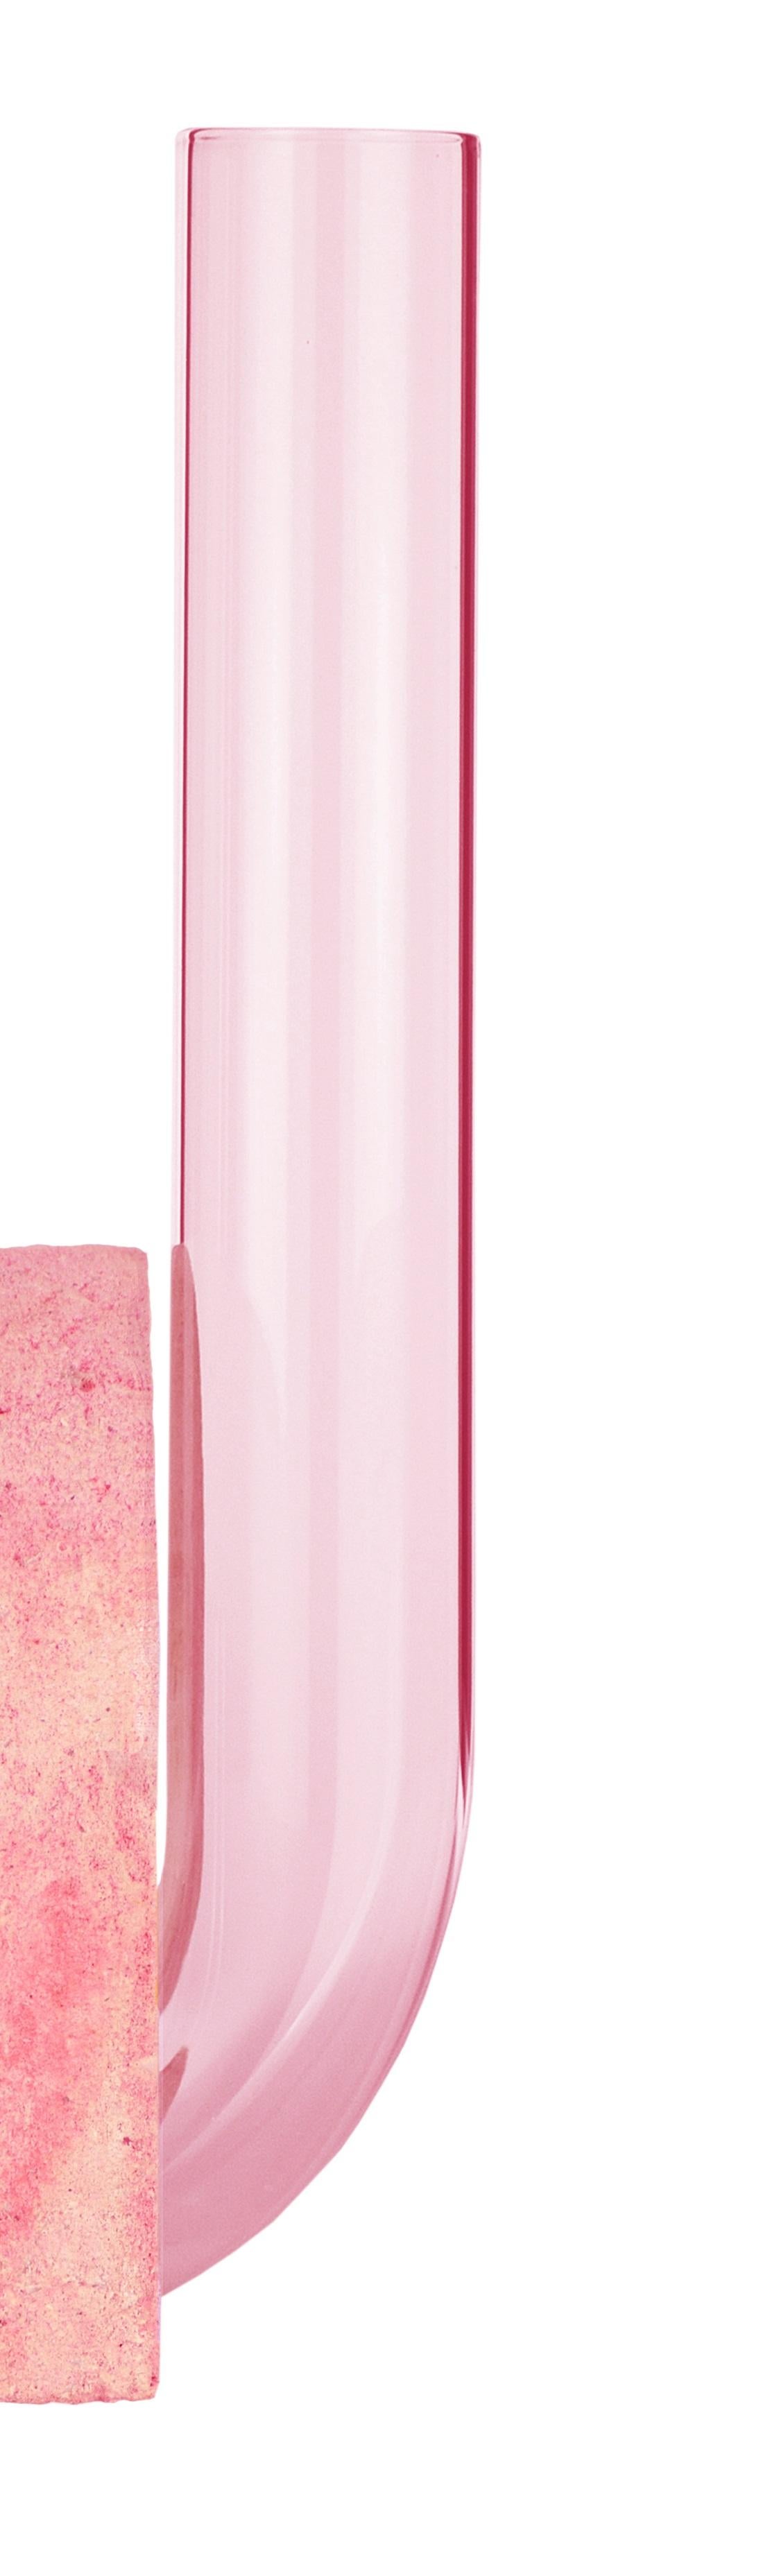 Post-Modern Pink-Pink Cochlea Della Liberazione Soils Edition Vase by Coki Barbieri